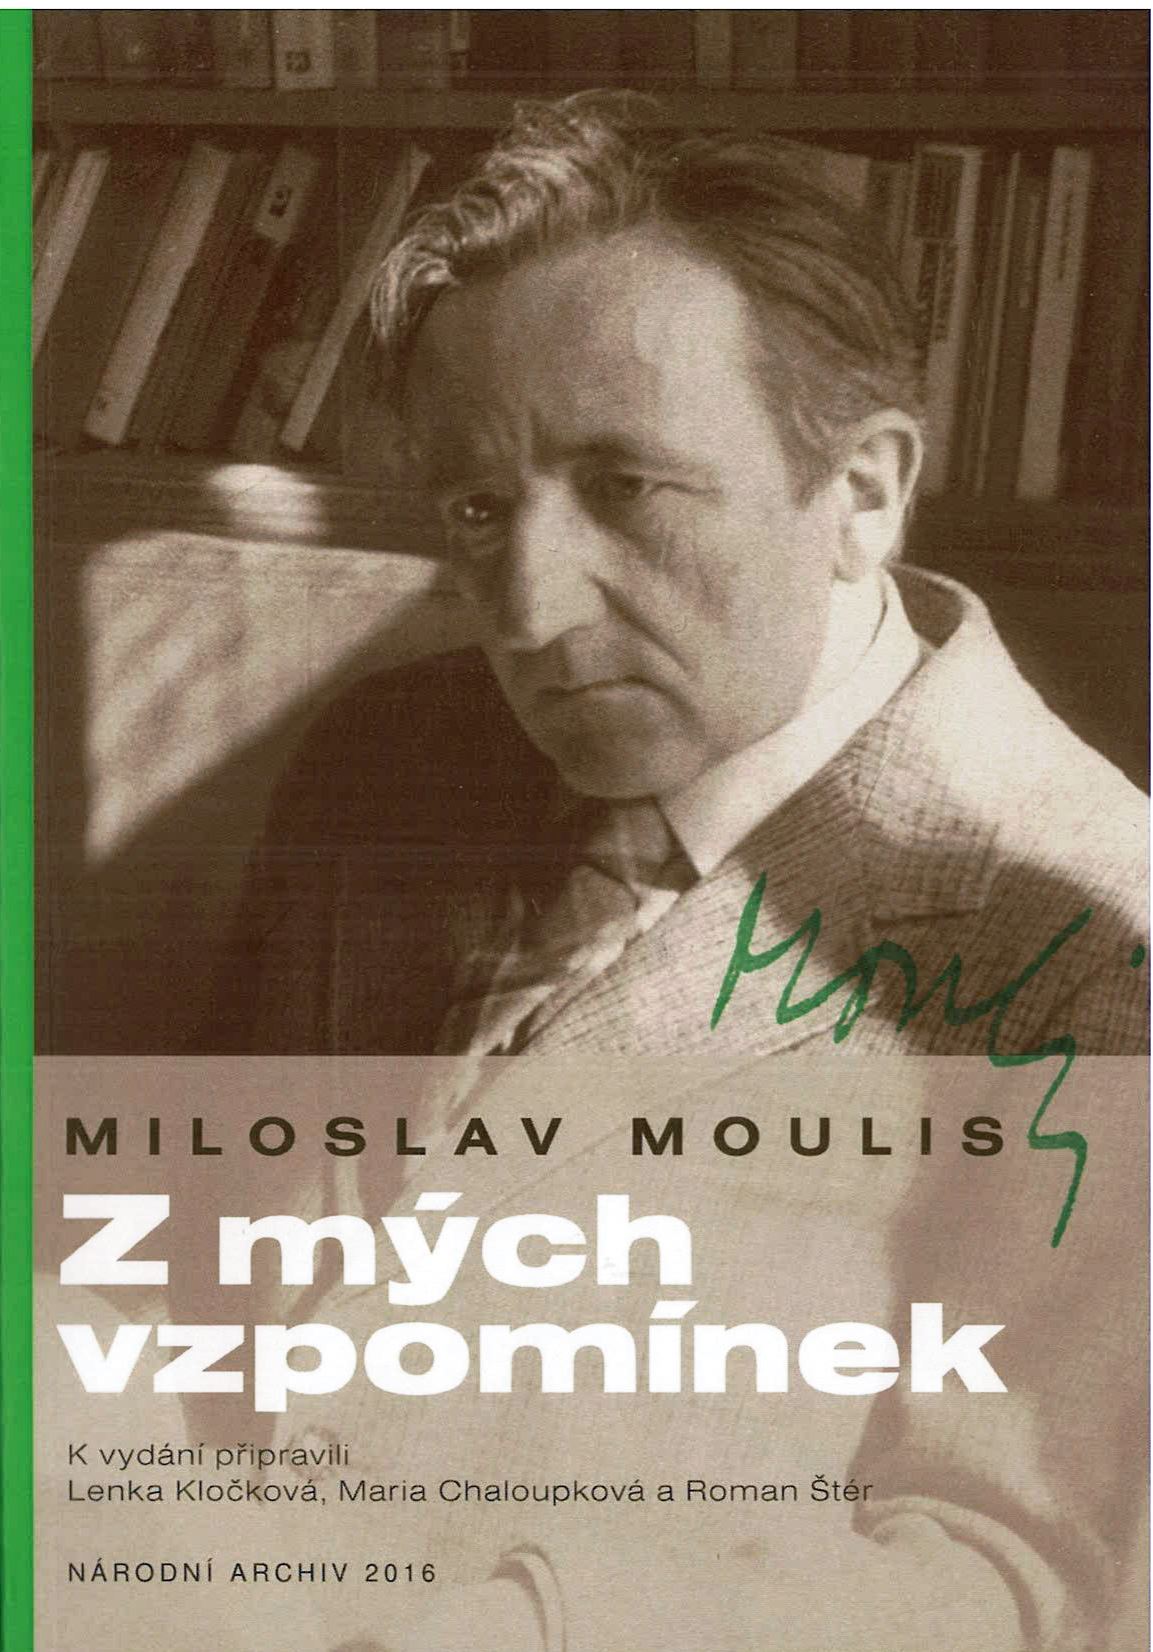 Miloslav Moulis